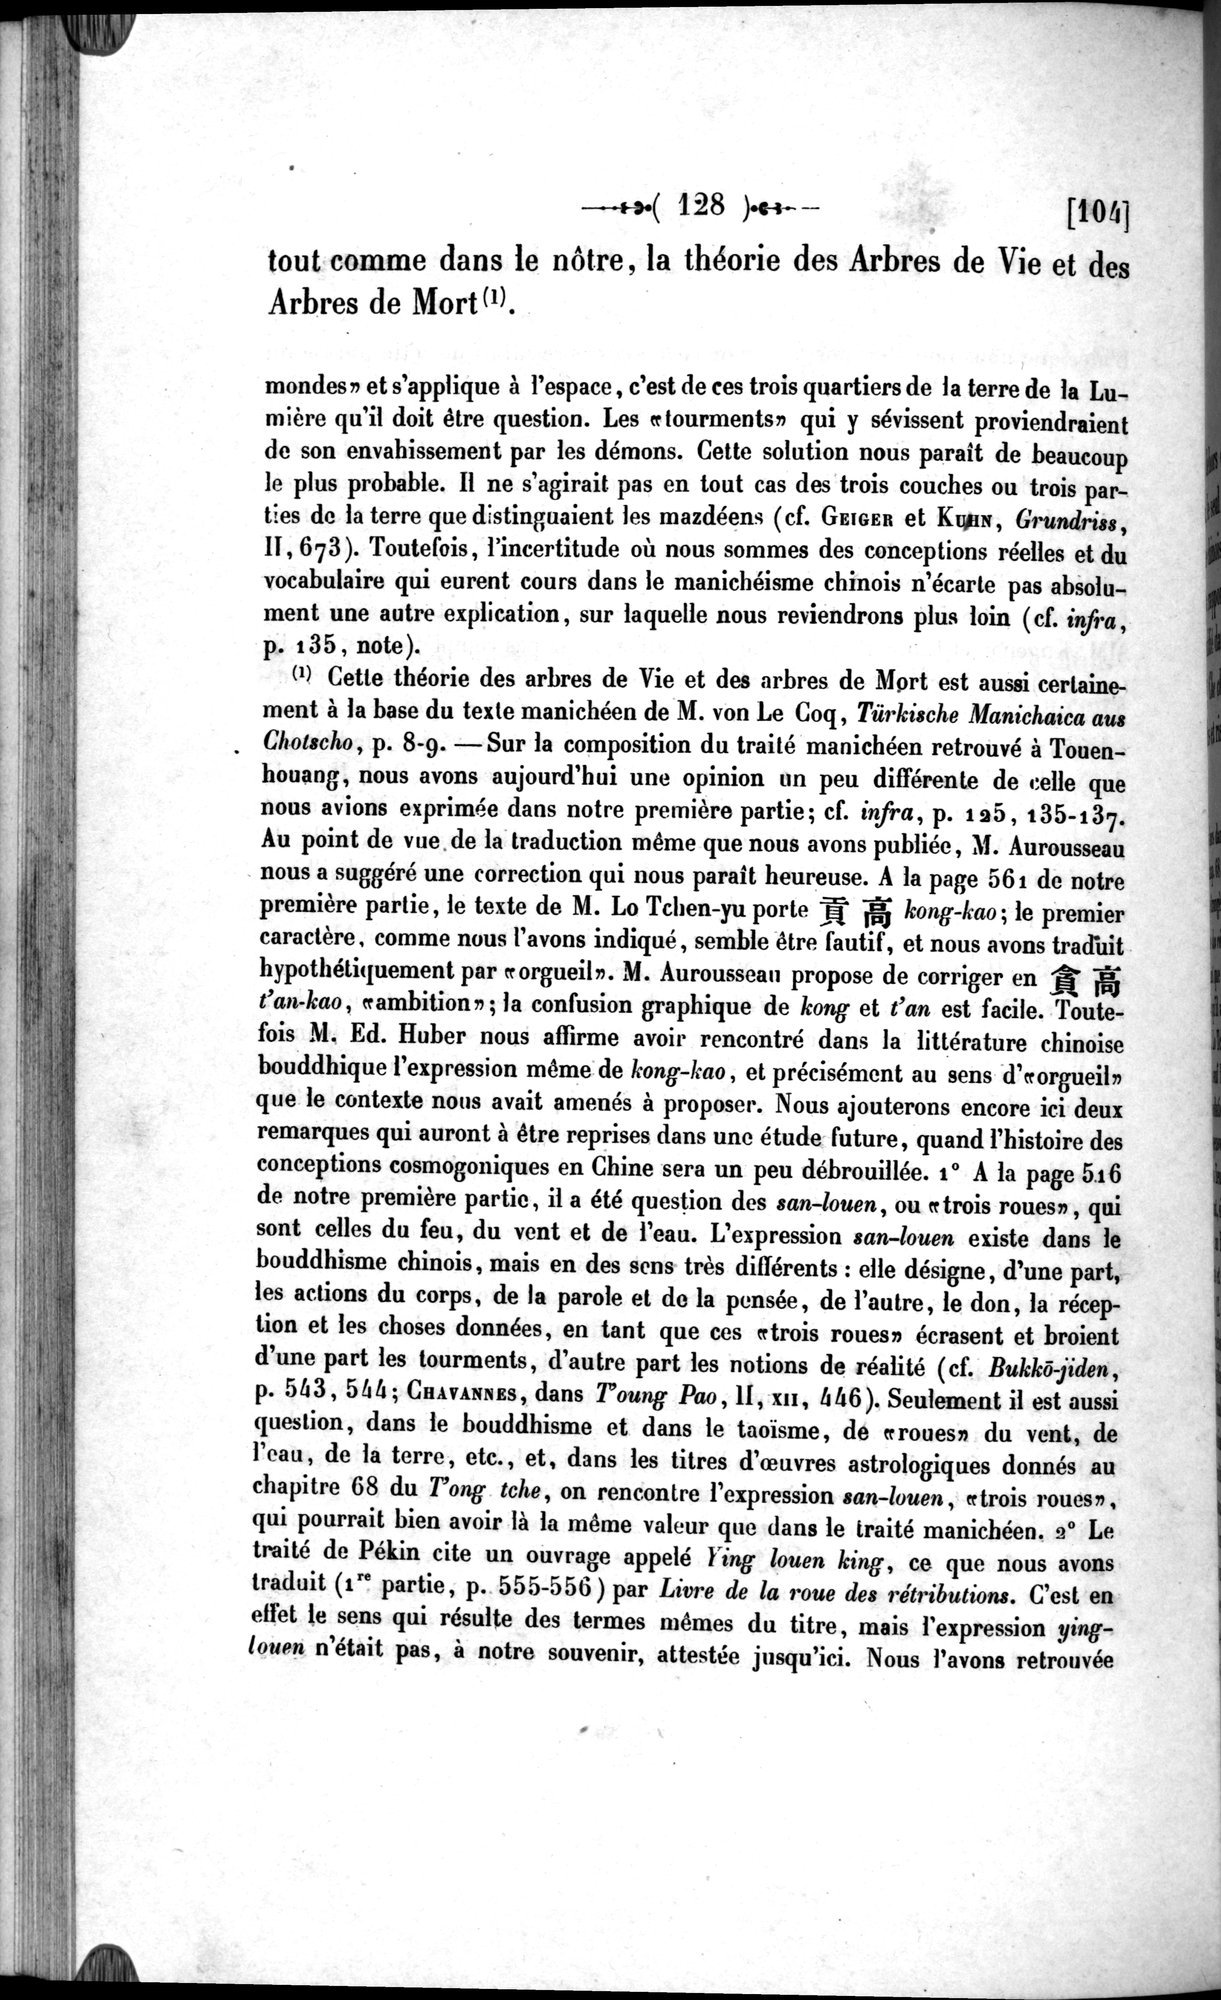 Un traité manichéen retrouvé en Chine : vol.1 / Page 138 (Grayscale High Resolution Image)